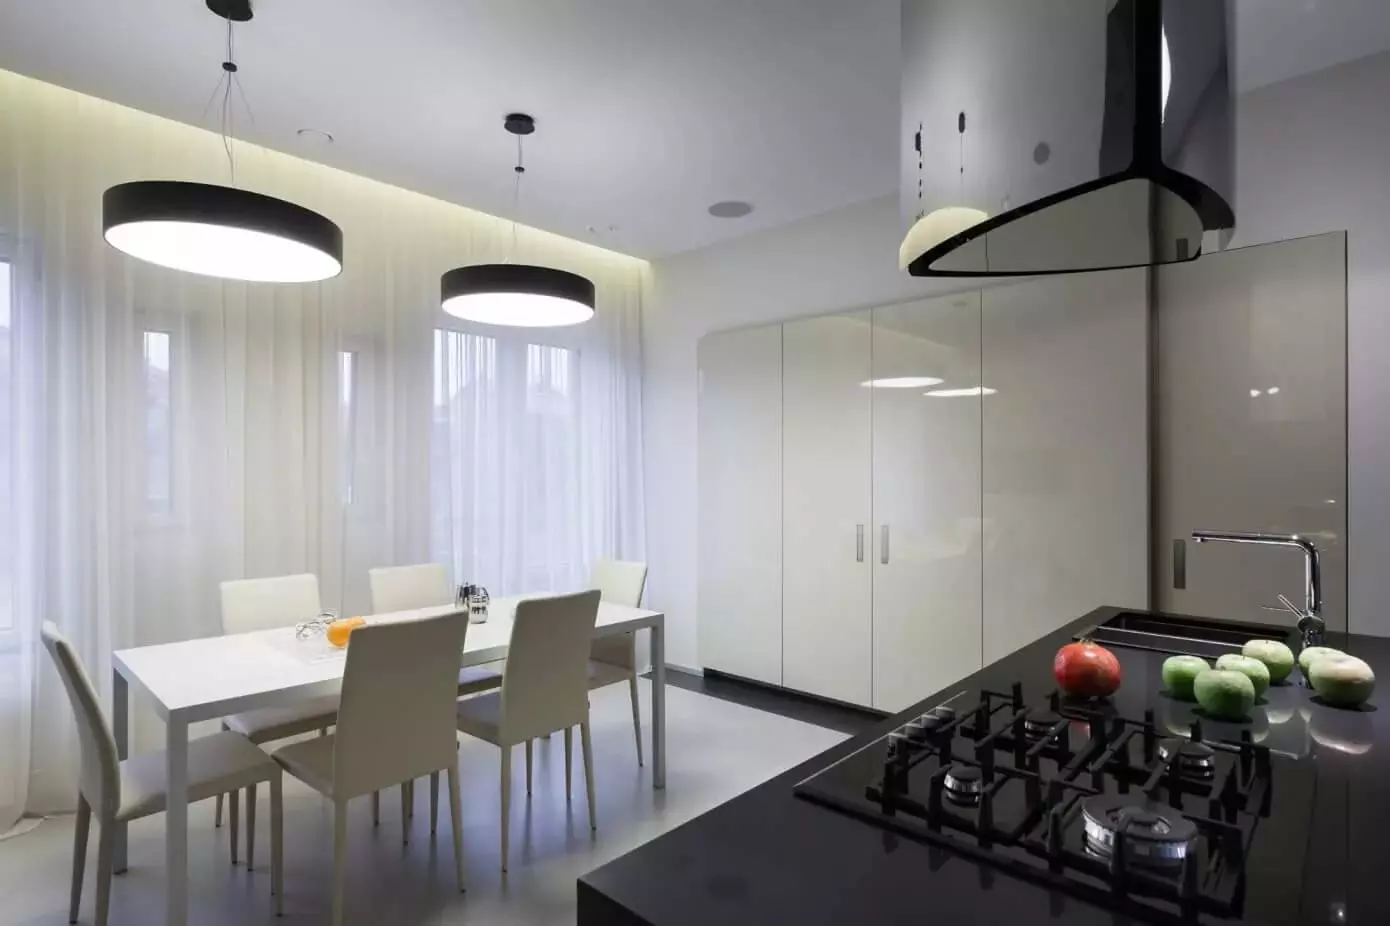 Cortinas para cozinha branca (42 fotos): Que cores são adequadas para design de cozinha em cores preto e branco? Como as cortinas azuis olham no interior da cozinha branca? 20975_29